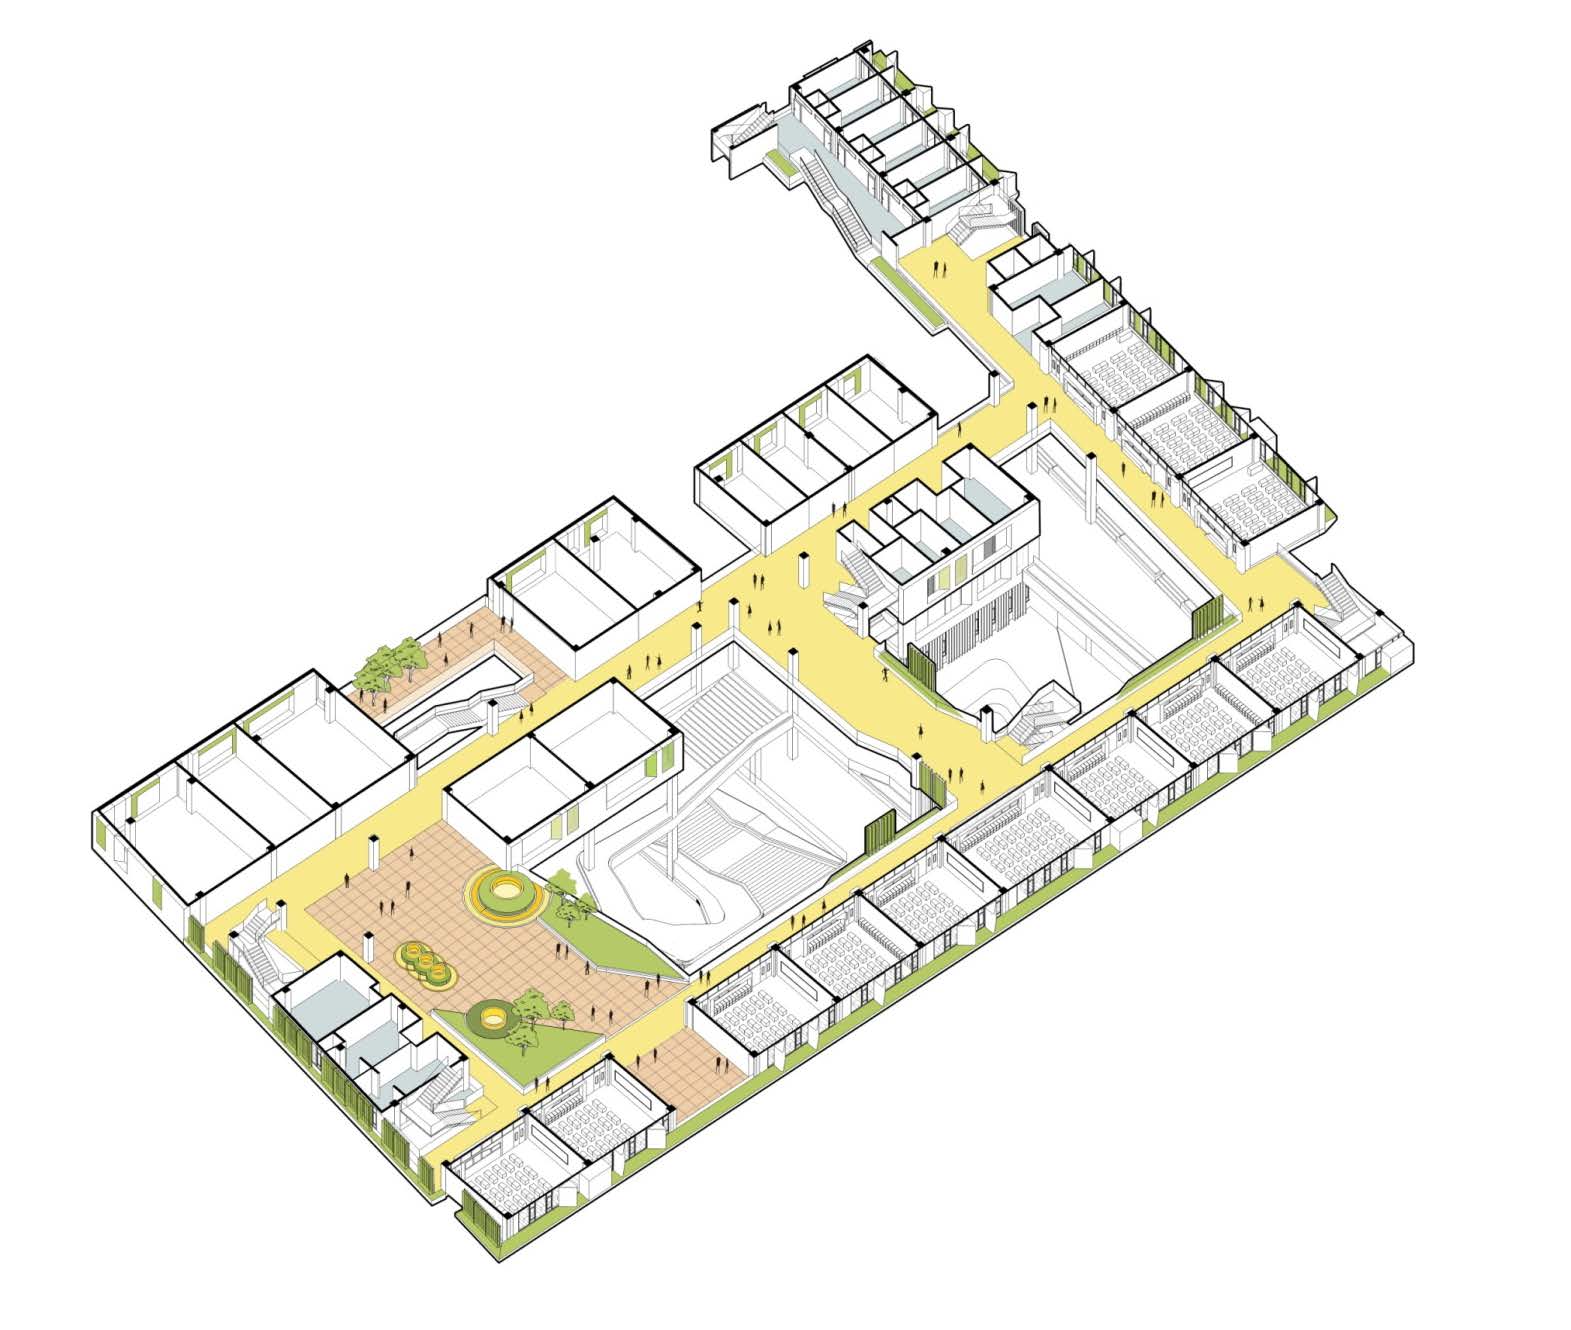 3F 图22. 东意建筑的新洲小学中标深化方案分层轴测分解图